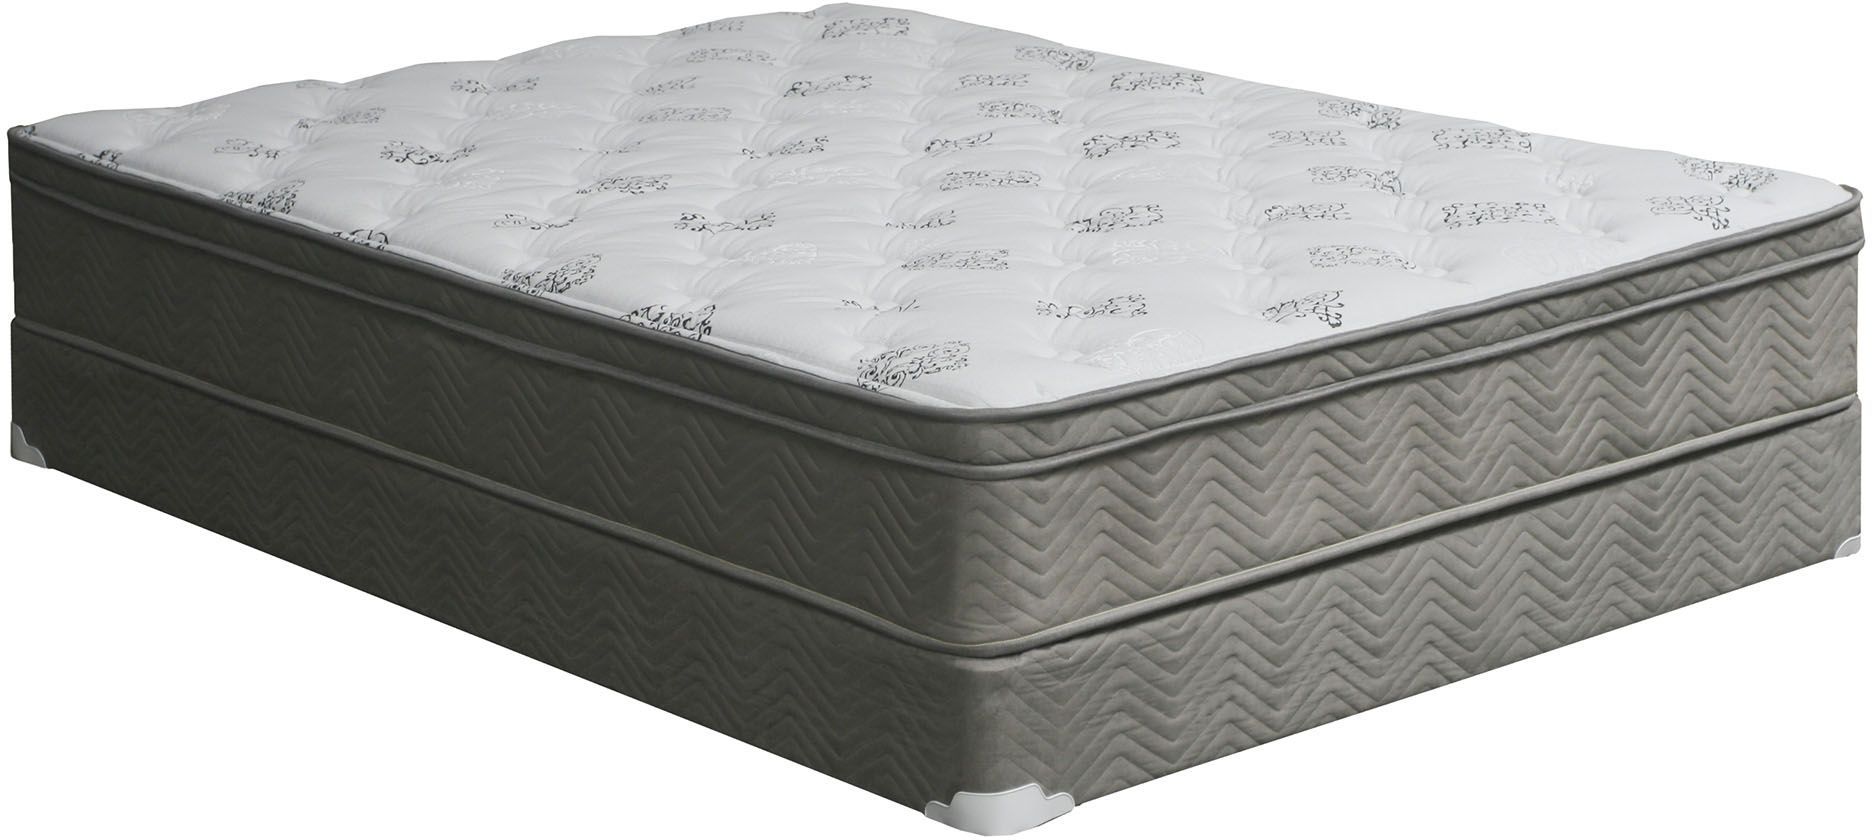 euro pedic queen mattress